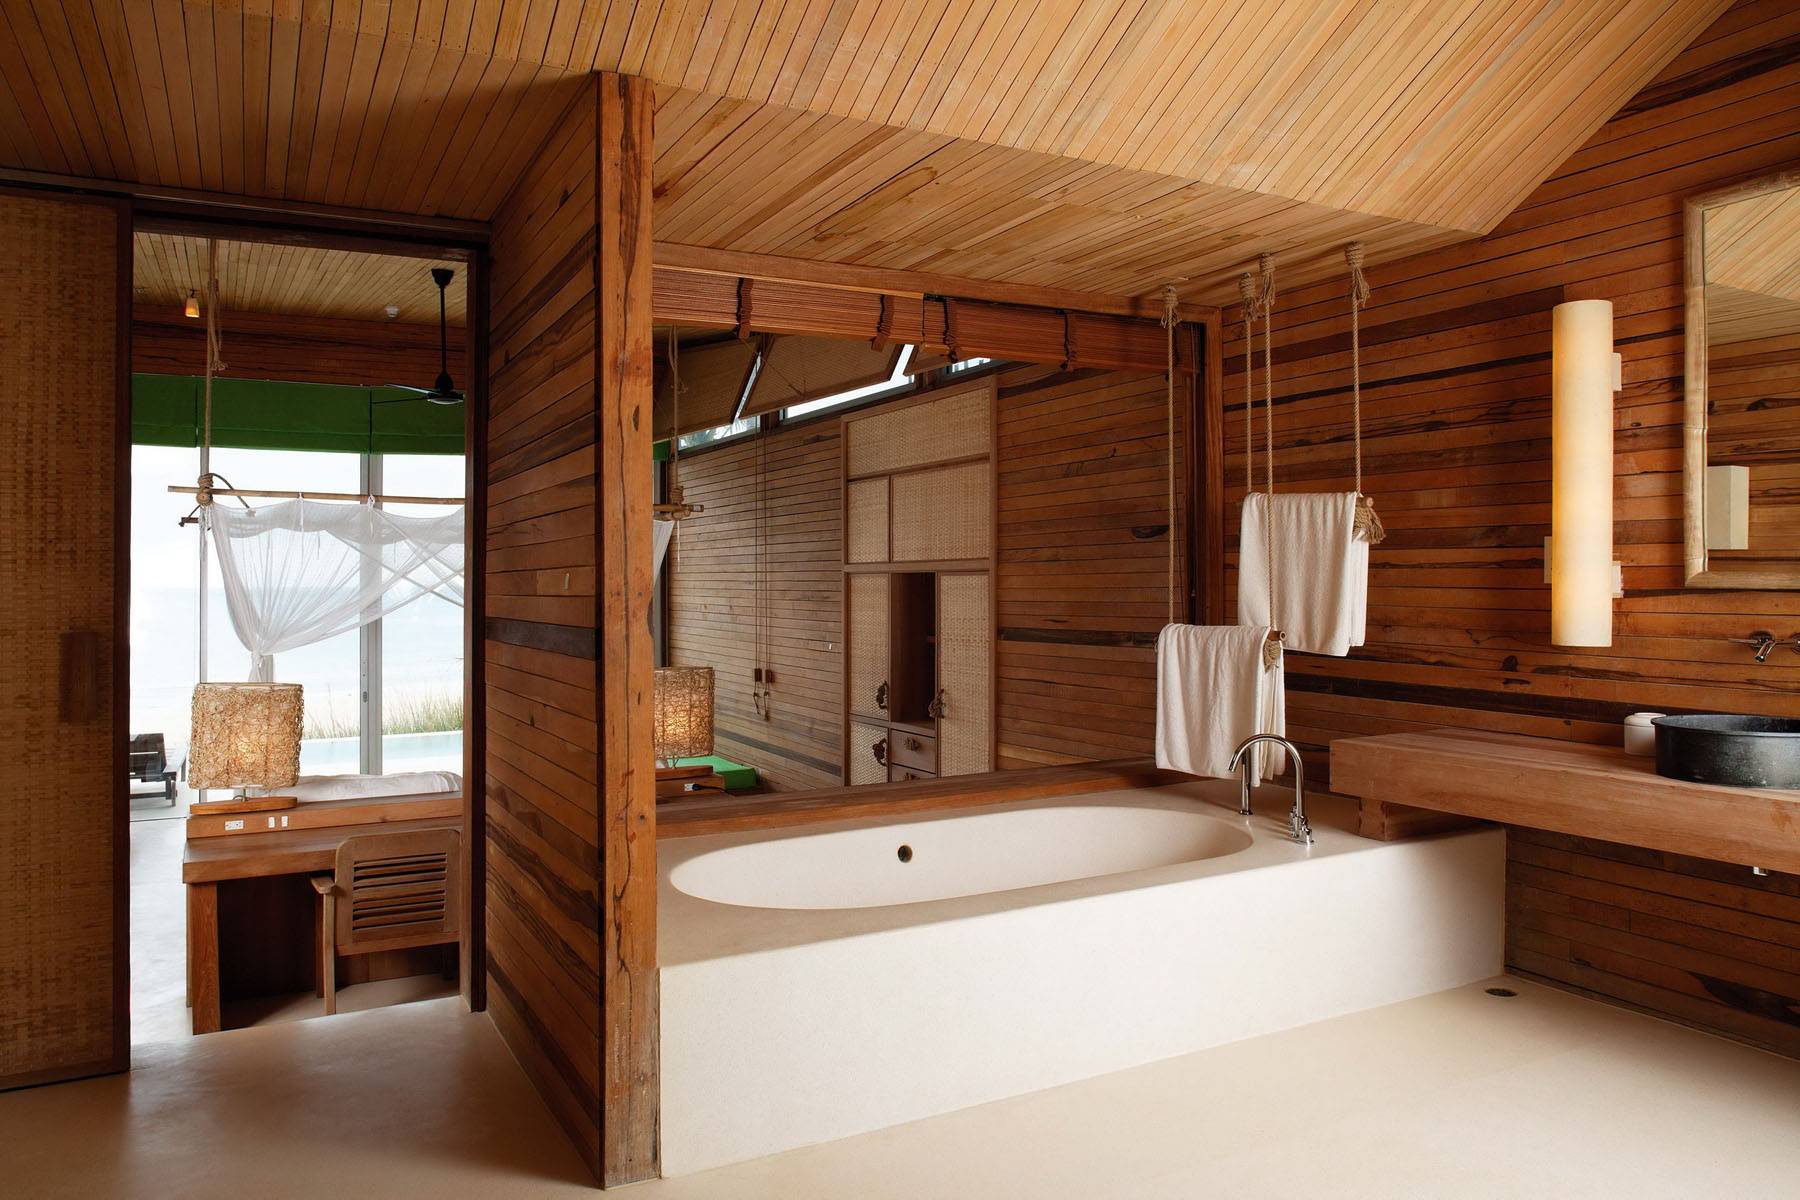 Санузел в деревянном доме: дизайн. отделка, гидроизоляция, обустройство пола и интерьера санузла